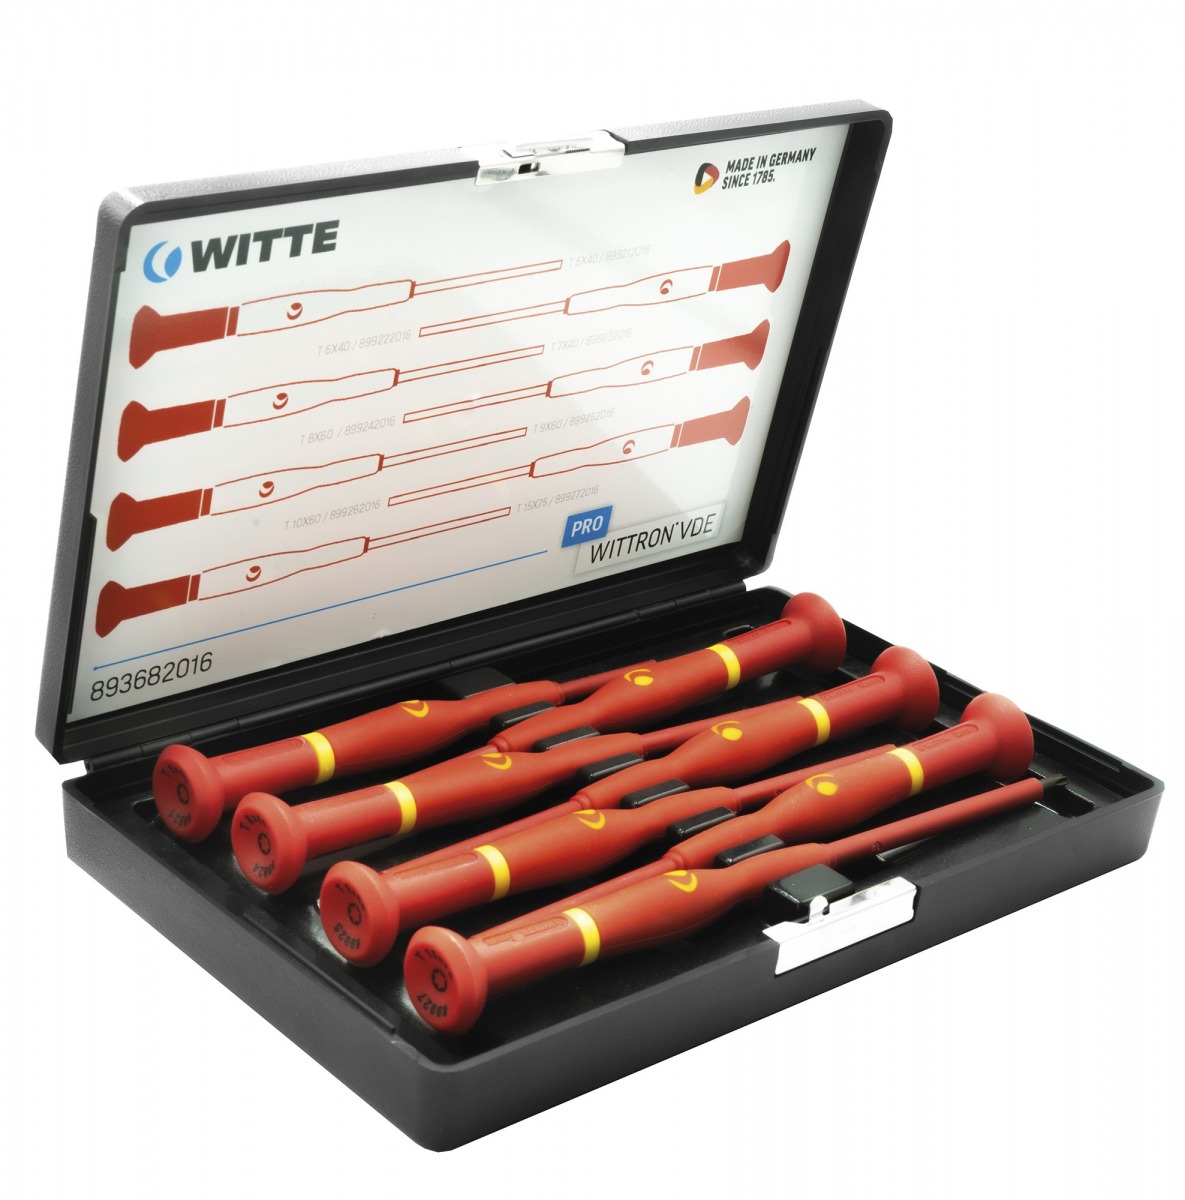 Juegos de destornilladores de precisión WITTRON VDE en estuche de plástico antichoque WIT-89367 | DESTORNILLADORES